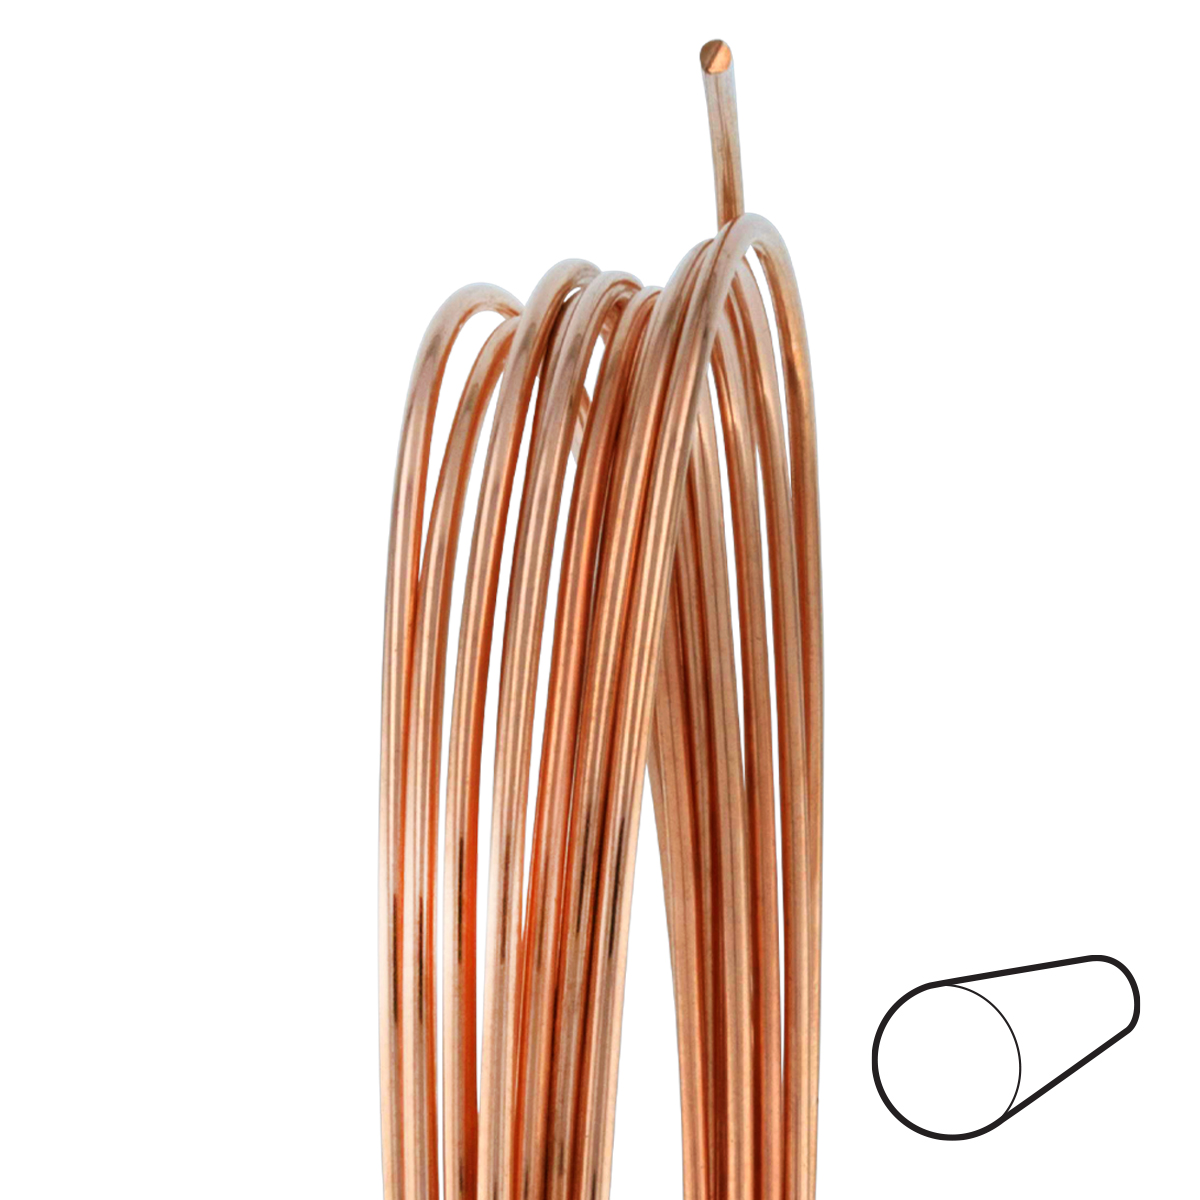 6 Gauge Round Dead Soft Copper Wire: Wire Jewelry, Wire Wrap Tutorials